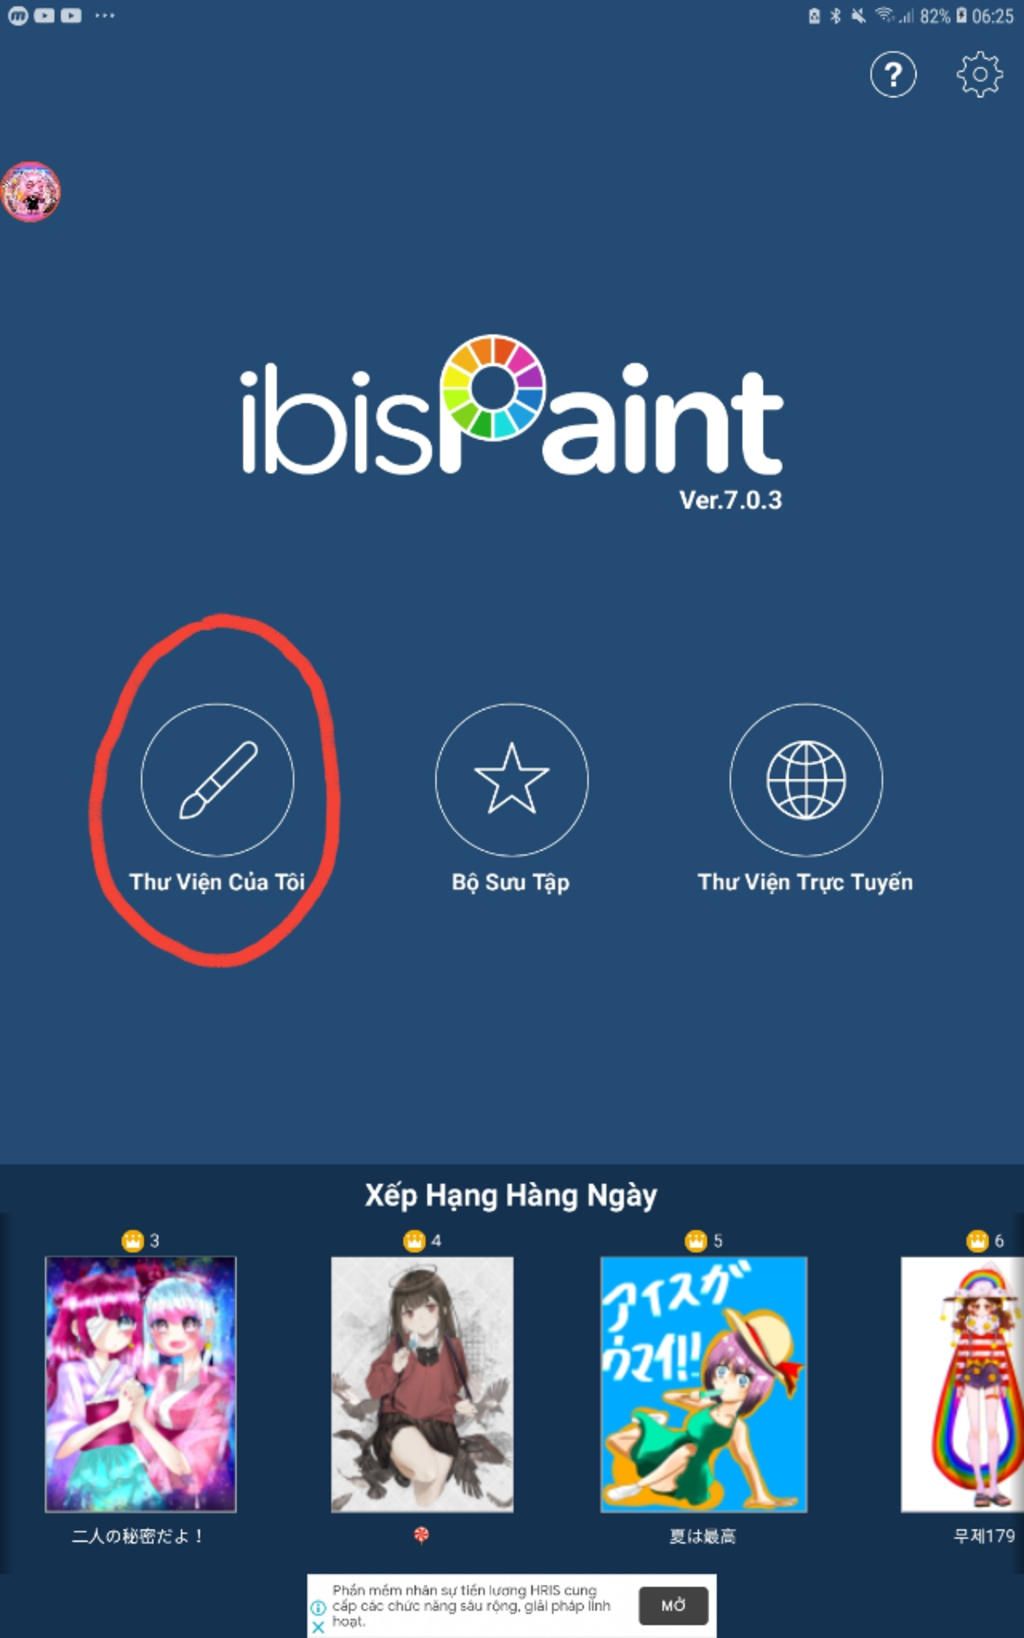 Ibis Paint X là một phần mềm vẽ vô cùng đa chức năng và dễ sử dụng. Bạn có thể tạo ra những bức tranh chuyên nghiệp chỉ trong vài giây với các công cụ mạnh mẽ của phần mềm này, từ vẽ đường nét chính xác đến tô màu sinh động.